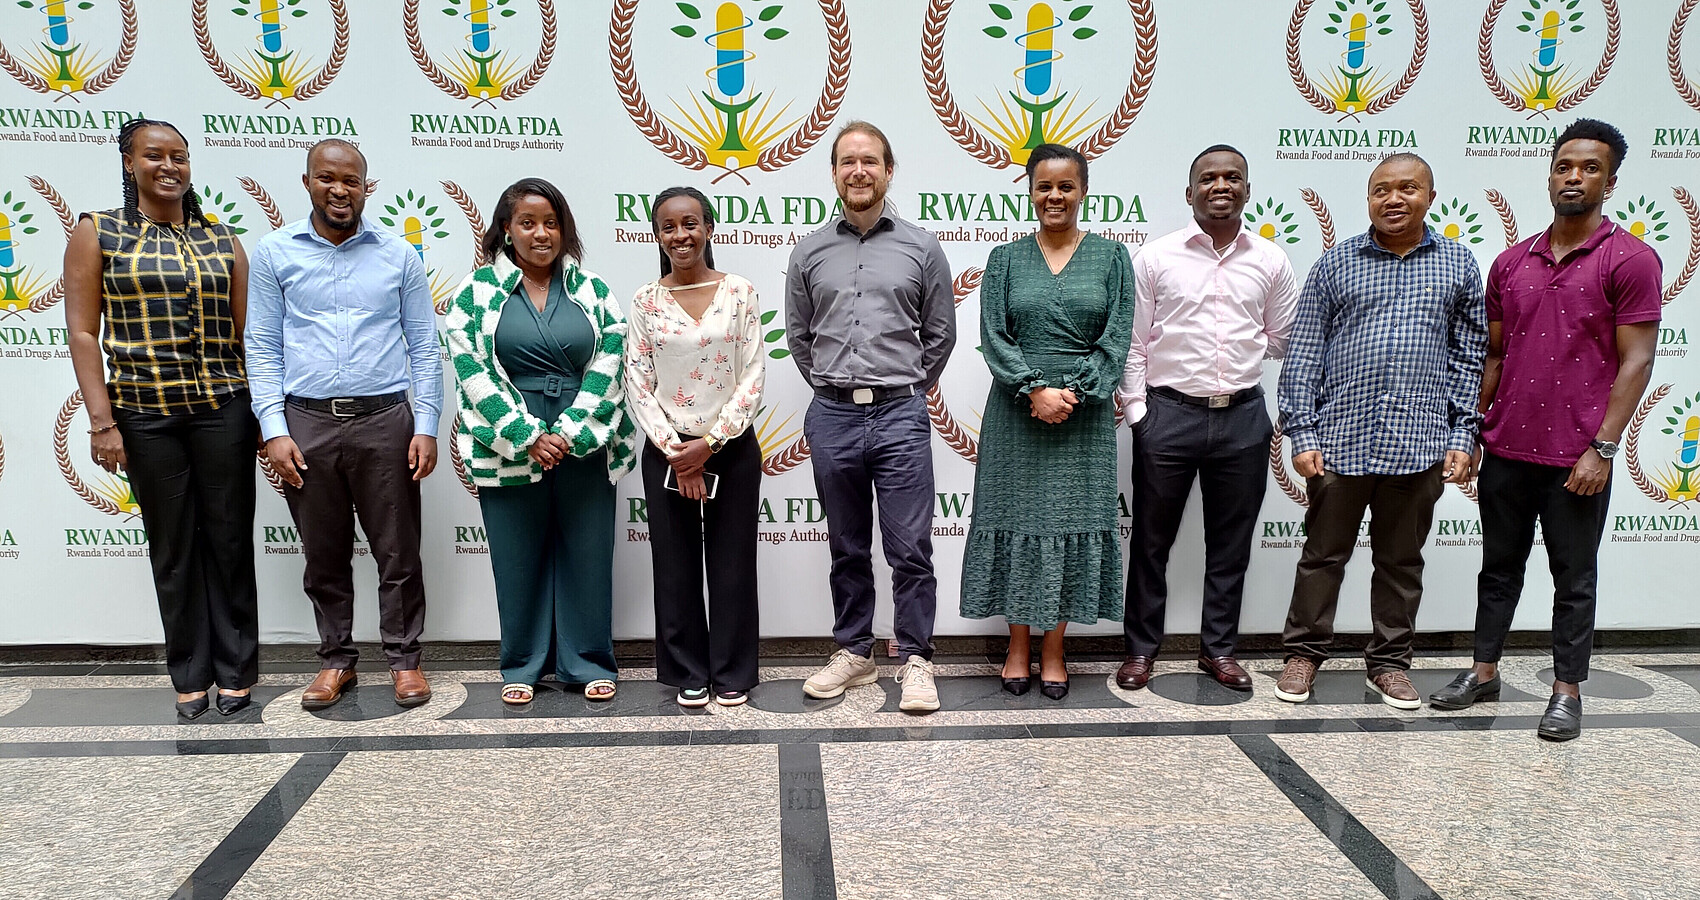 Das Bild zeigt ein Gruppenbild vor einer Pressewand in Ruanda mit teilnehmenden Inspektoren und Inspektorinnen der R-FDA 